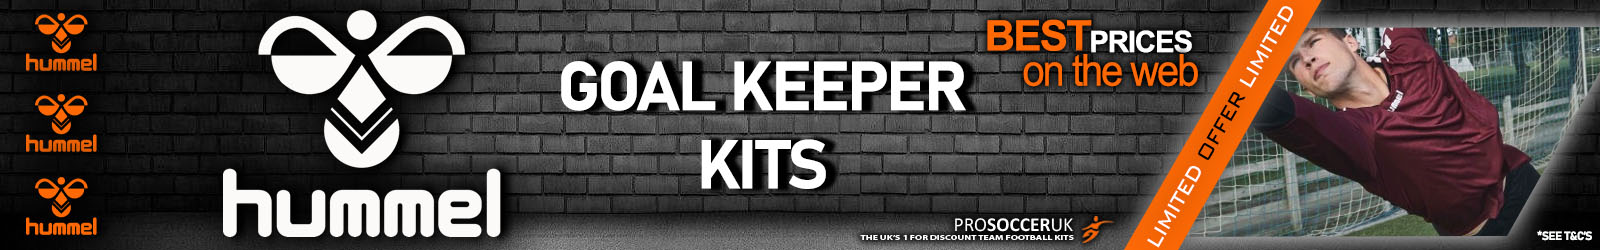 Hummel GoalKeeper Kits